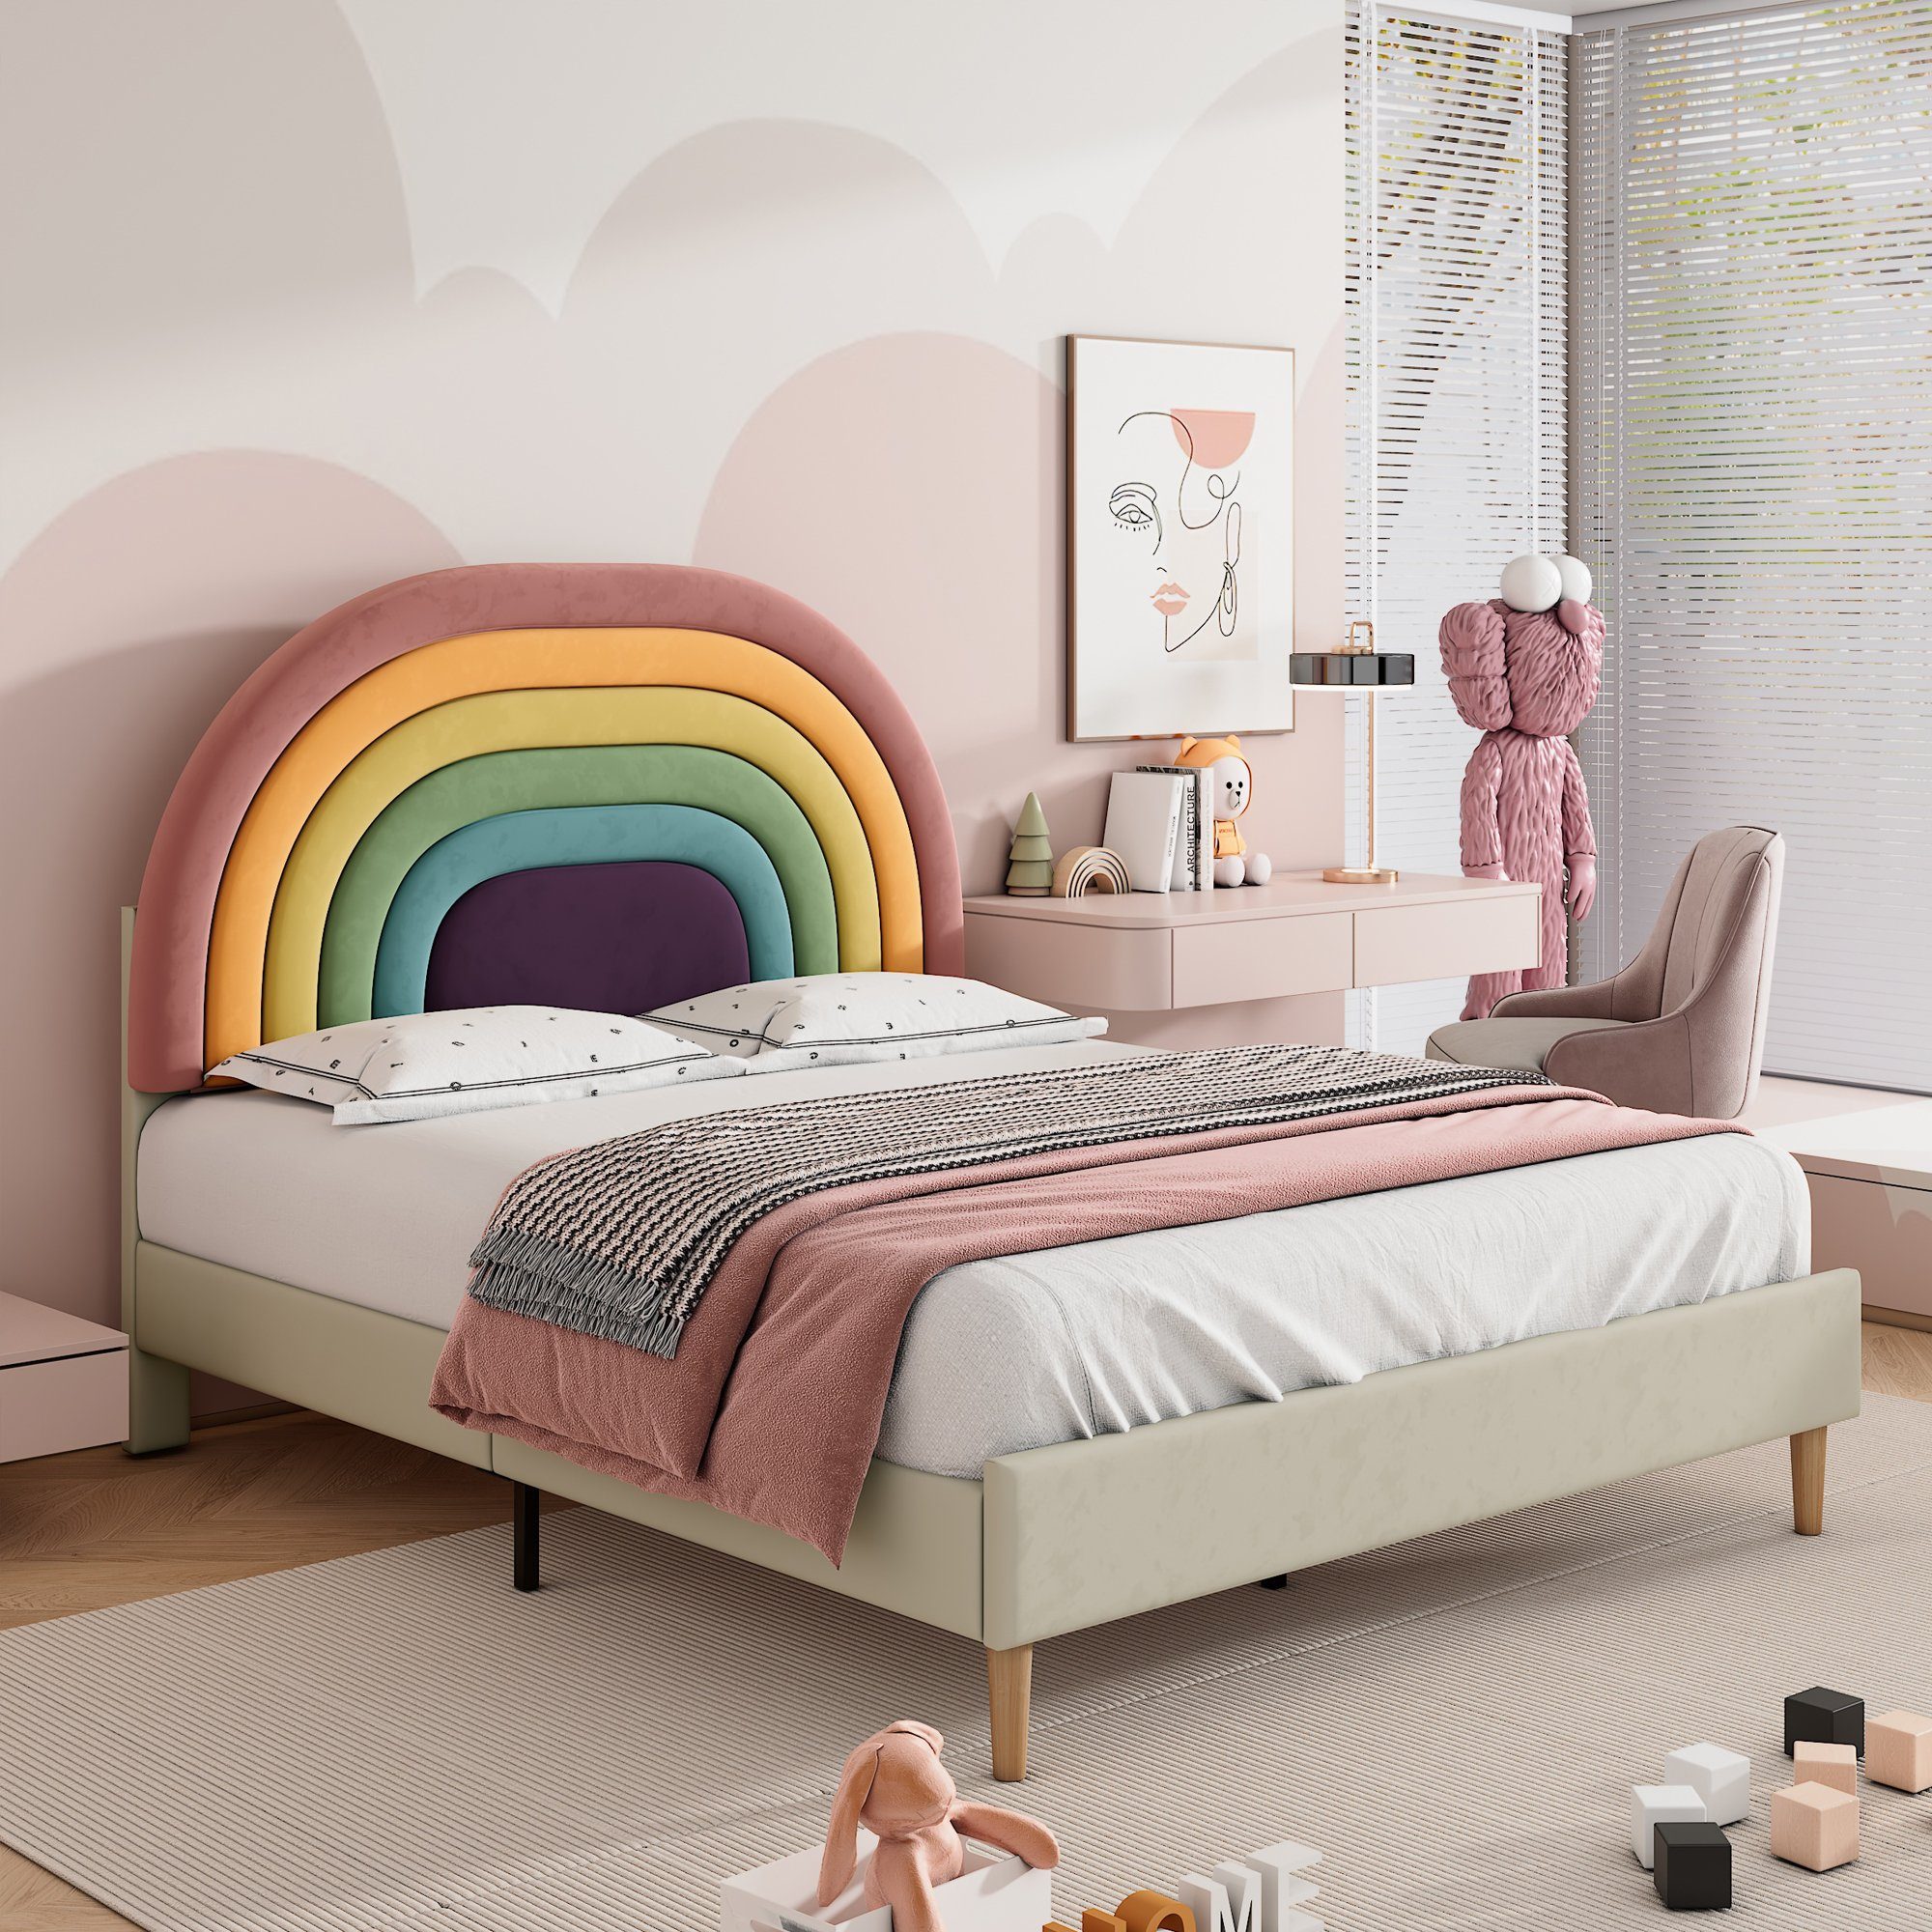 Flieks Polsterbett, Kinderbett mit verstellbarem Regenbogen-Kopfteil 140x200cm Samt beige | Polsterbetten